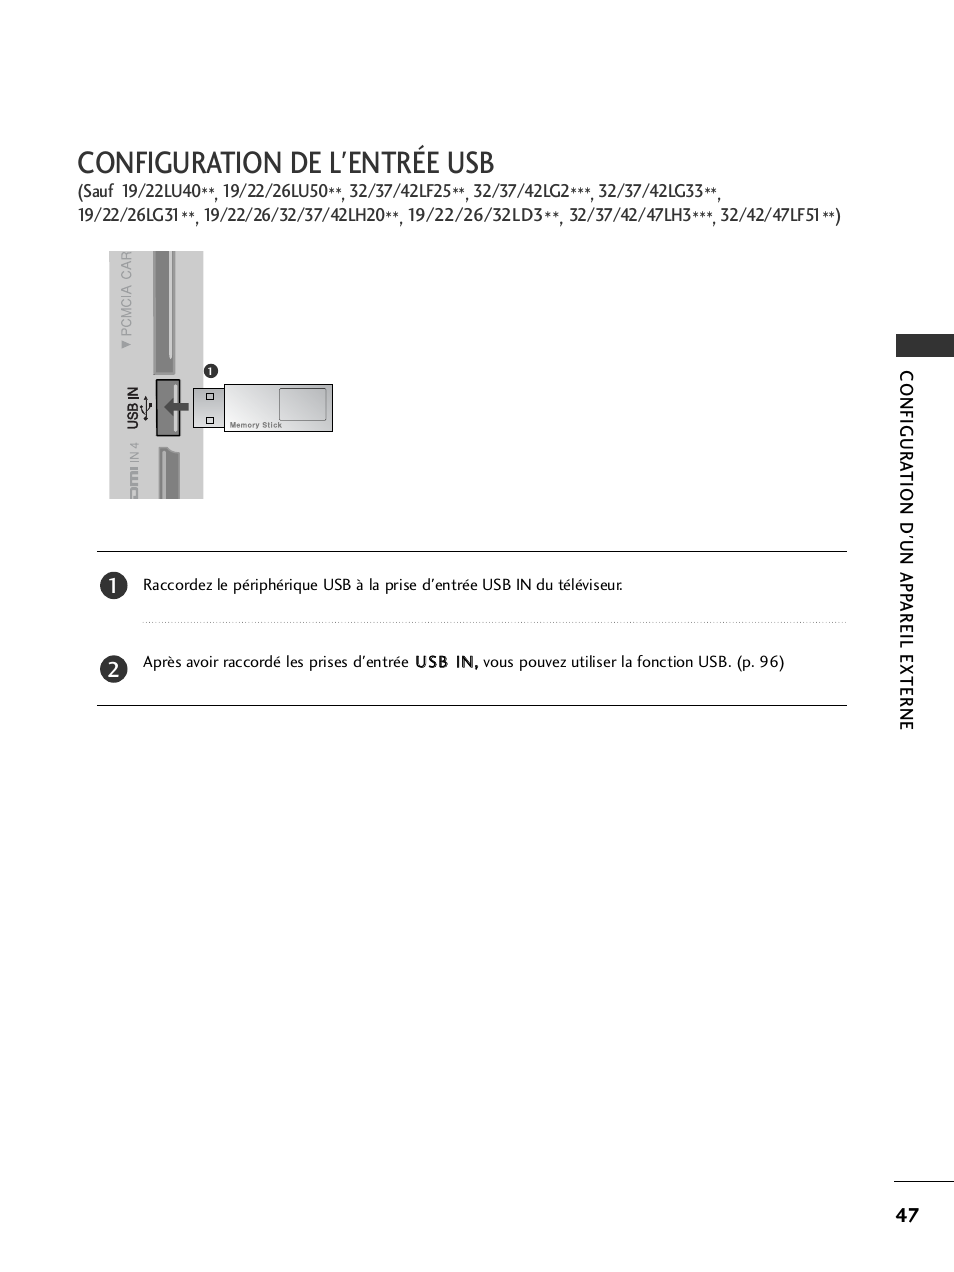 Configuration de l'entrée usb | LG 32LH40 Manuel d'utilisation | Page 49 / 180